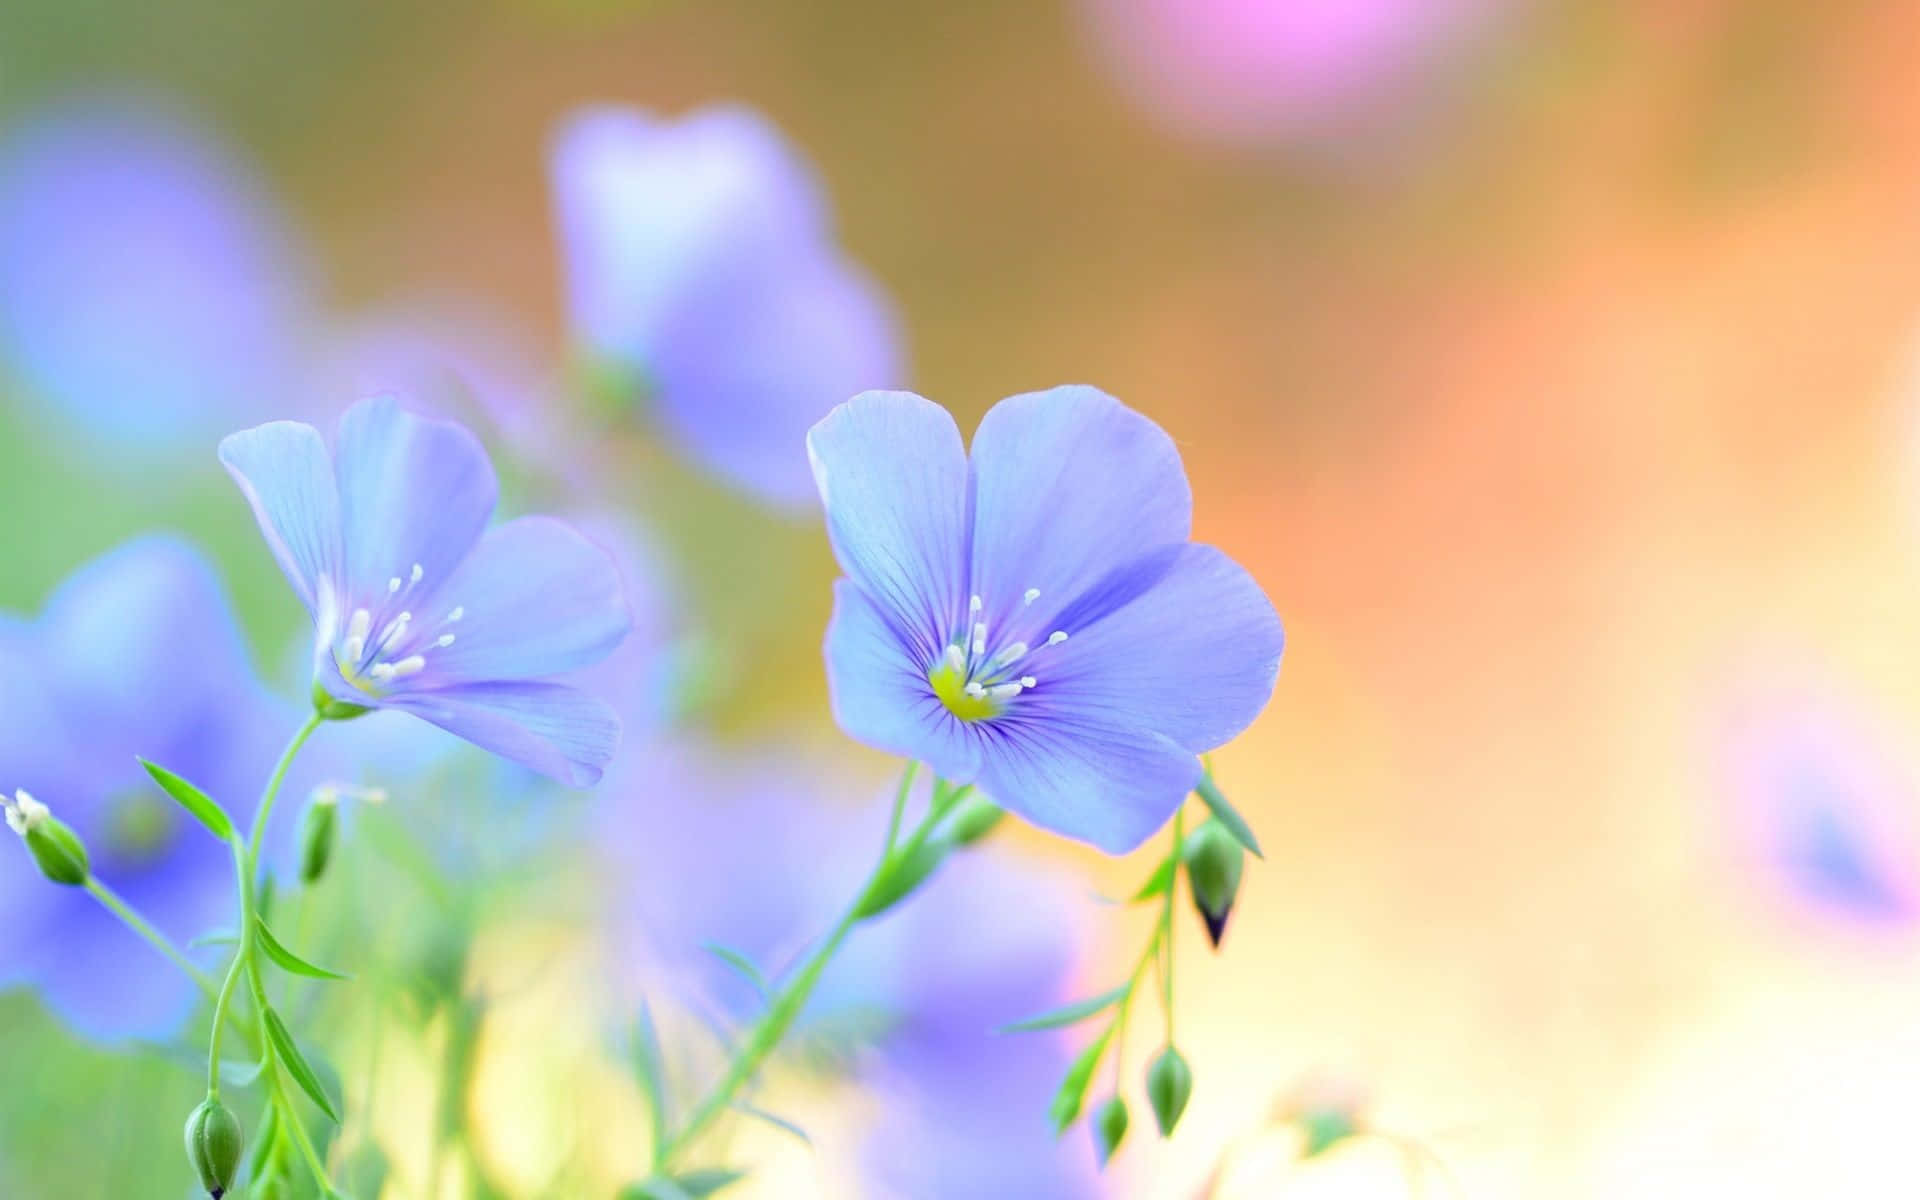 Knospenund Leinblumen Hintergrund In Blautönen.